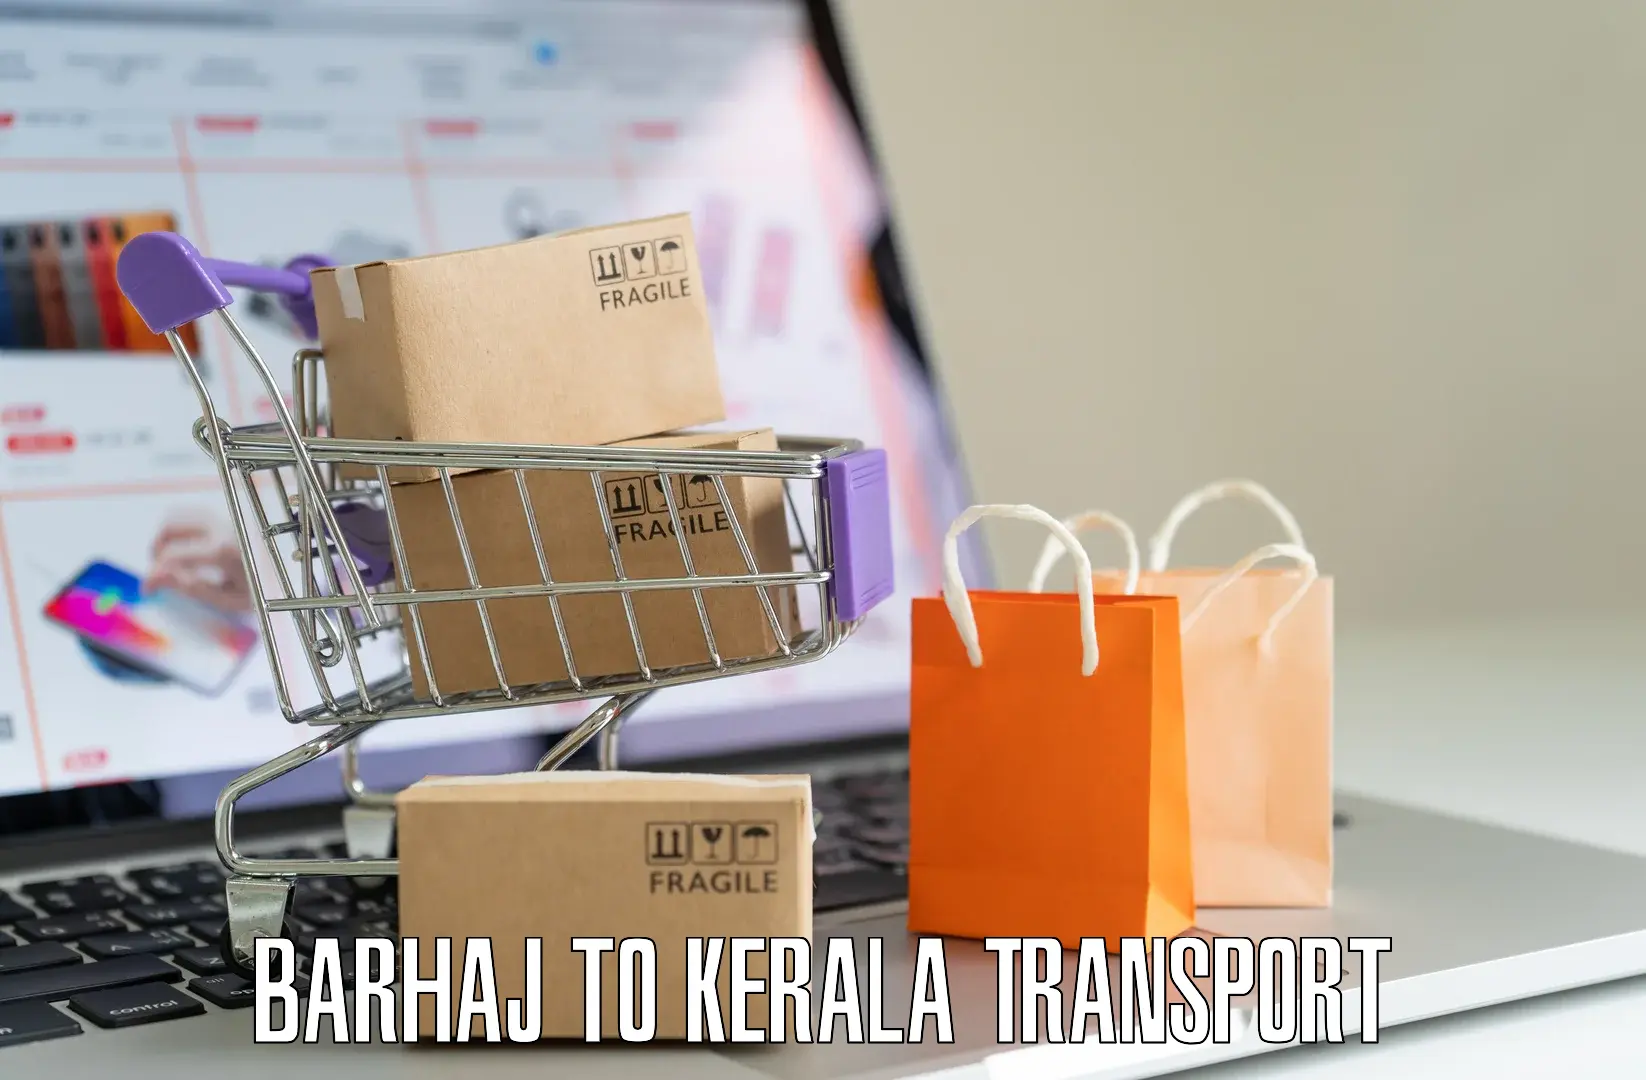 Vehicle transport services Barhaj to Kannapuram